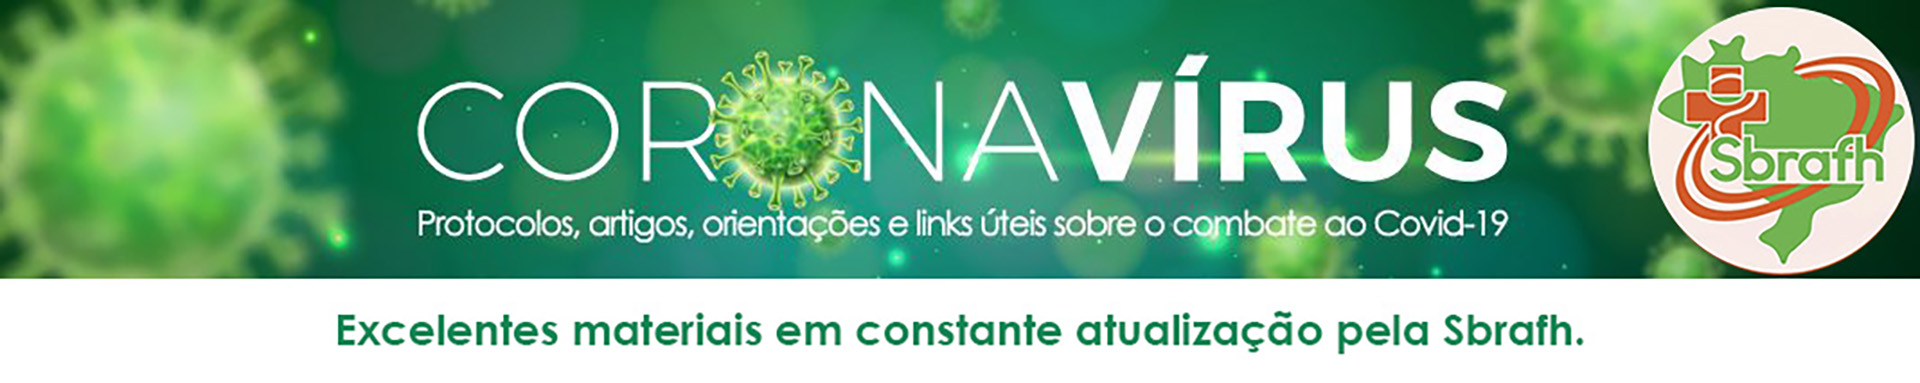 Página de artigos sobre o Coronavírus, pela Sbrafh